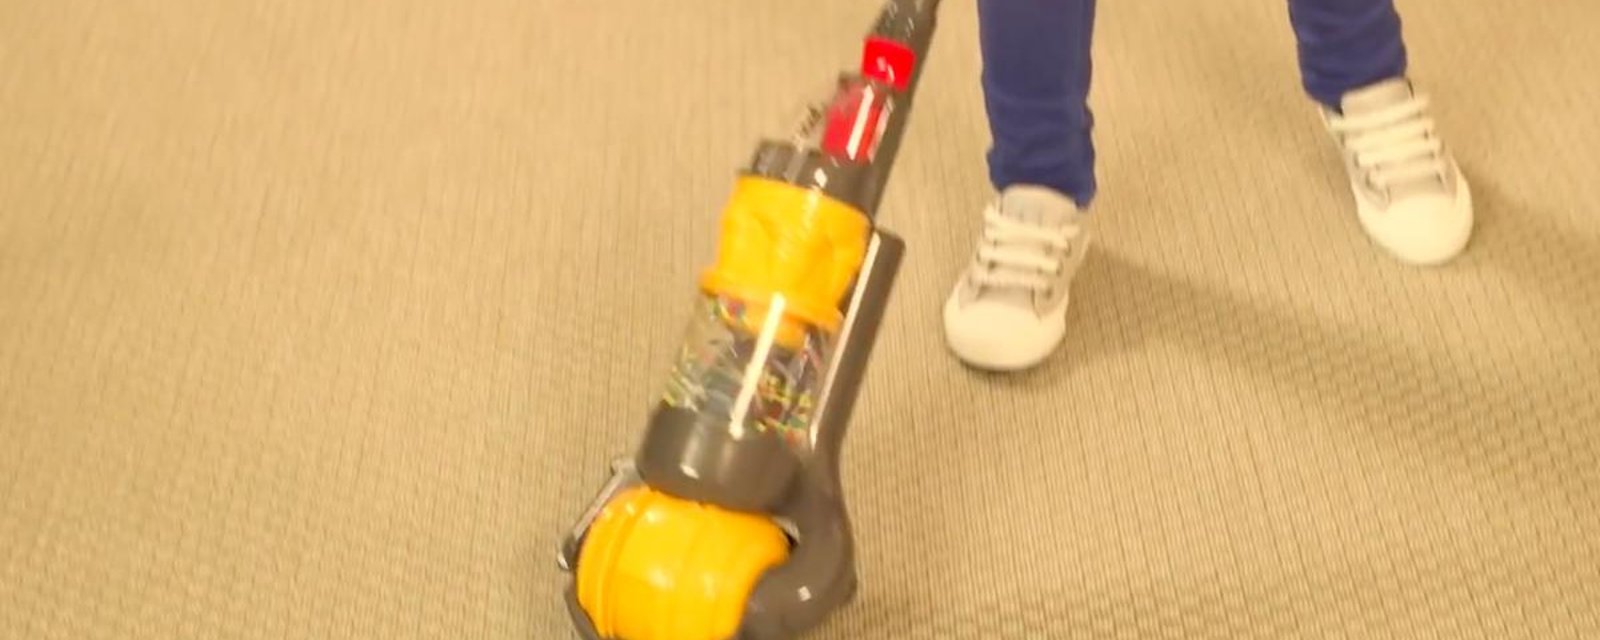 Une idée cadeau pour enfants qui vient en aide aux parents: un aspirateur-jouet Dyson qui aspire vraiment!